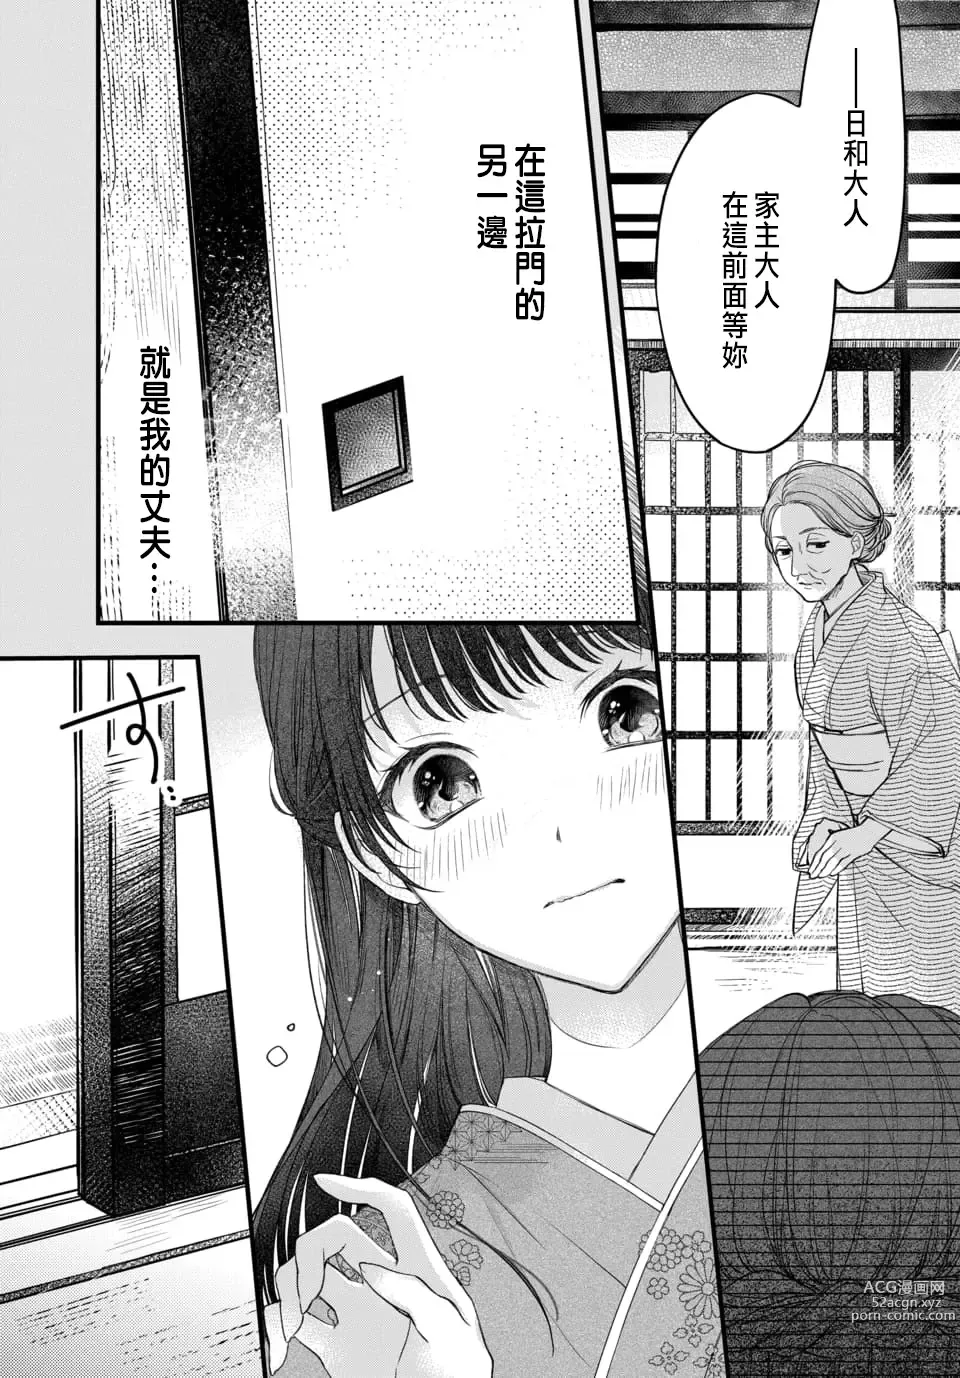 Page 10 of manga Tsuki e no Yomeiri 1-6